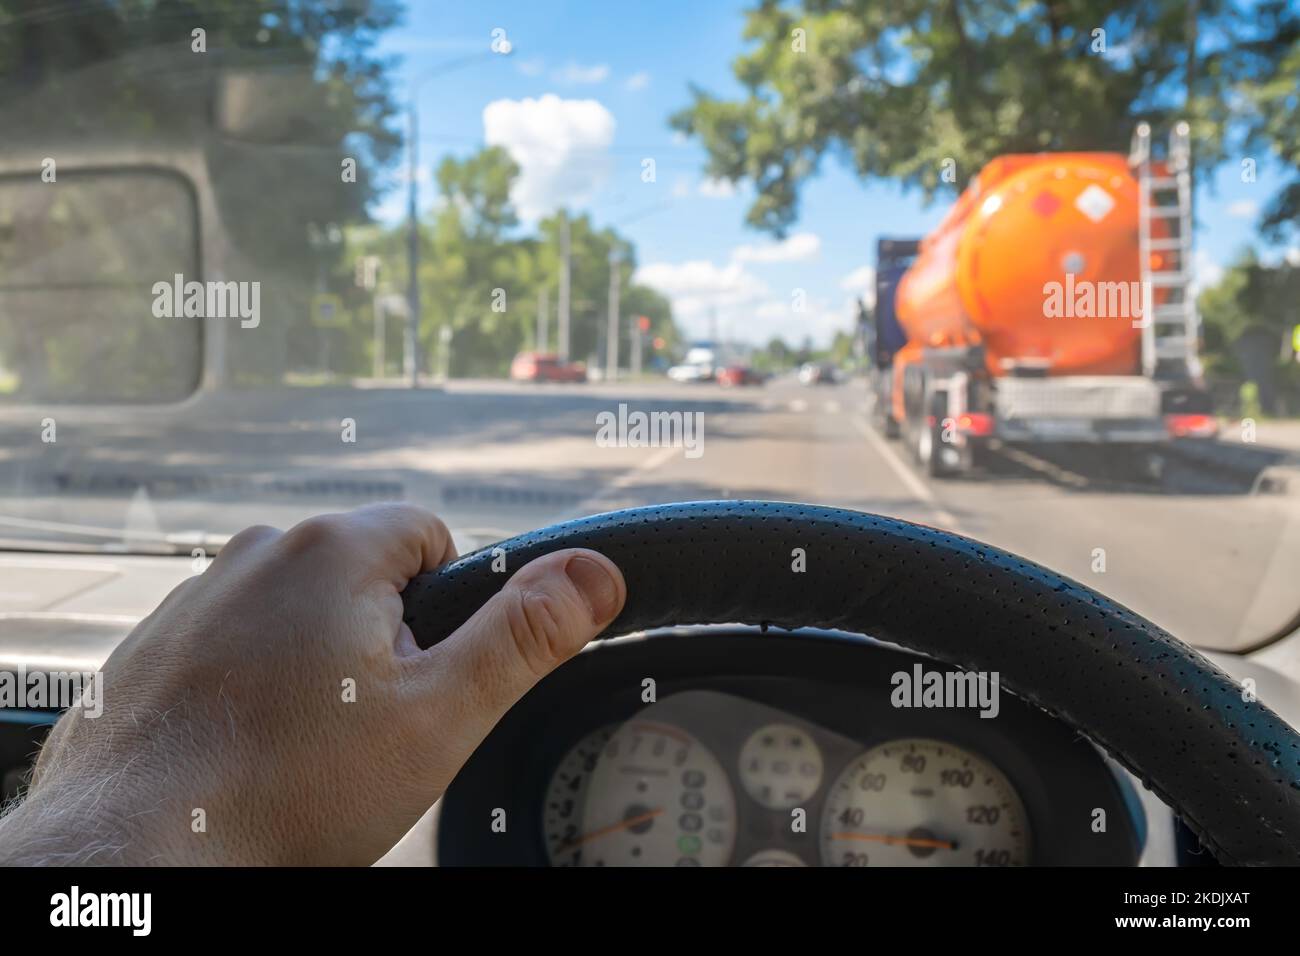 vista della mano del conducente dietro il volante di un'auto che sorpassa un autocarro cisterna con un serbatoio di carburante infiammabile all'incrocio di una strada cittadina Foto Stock